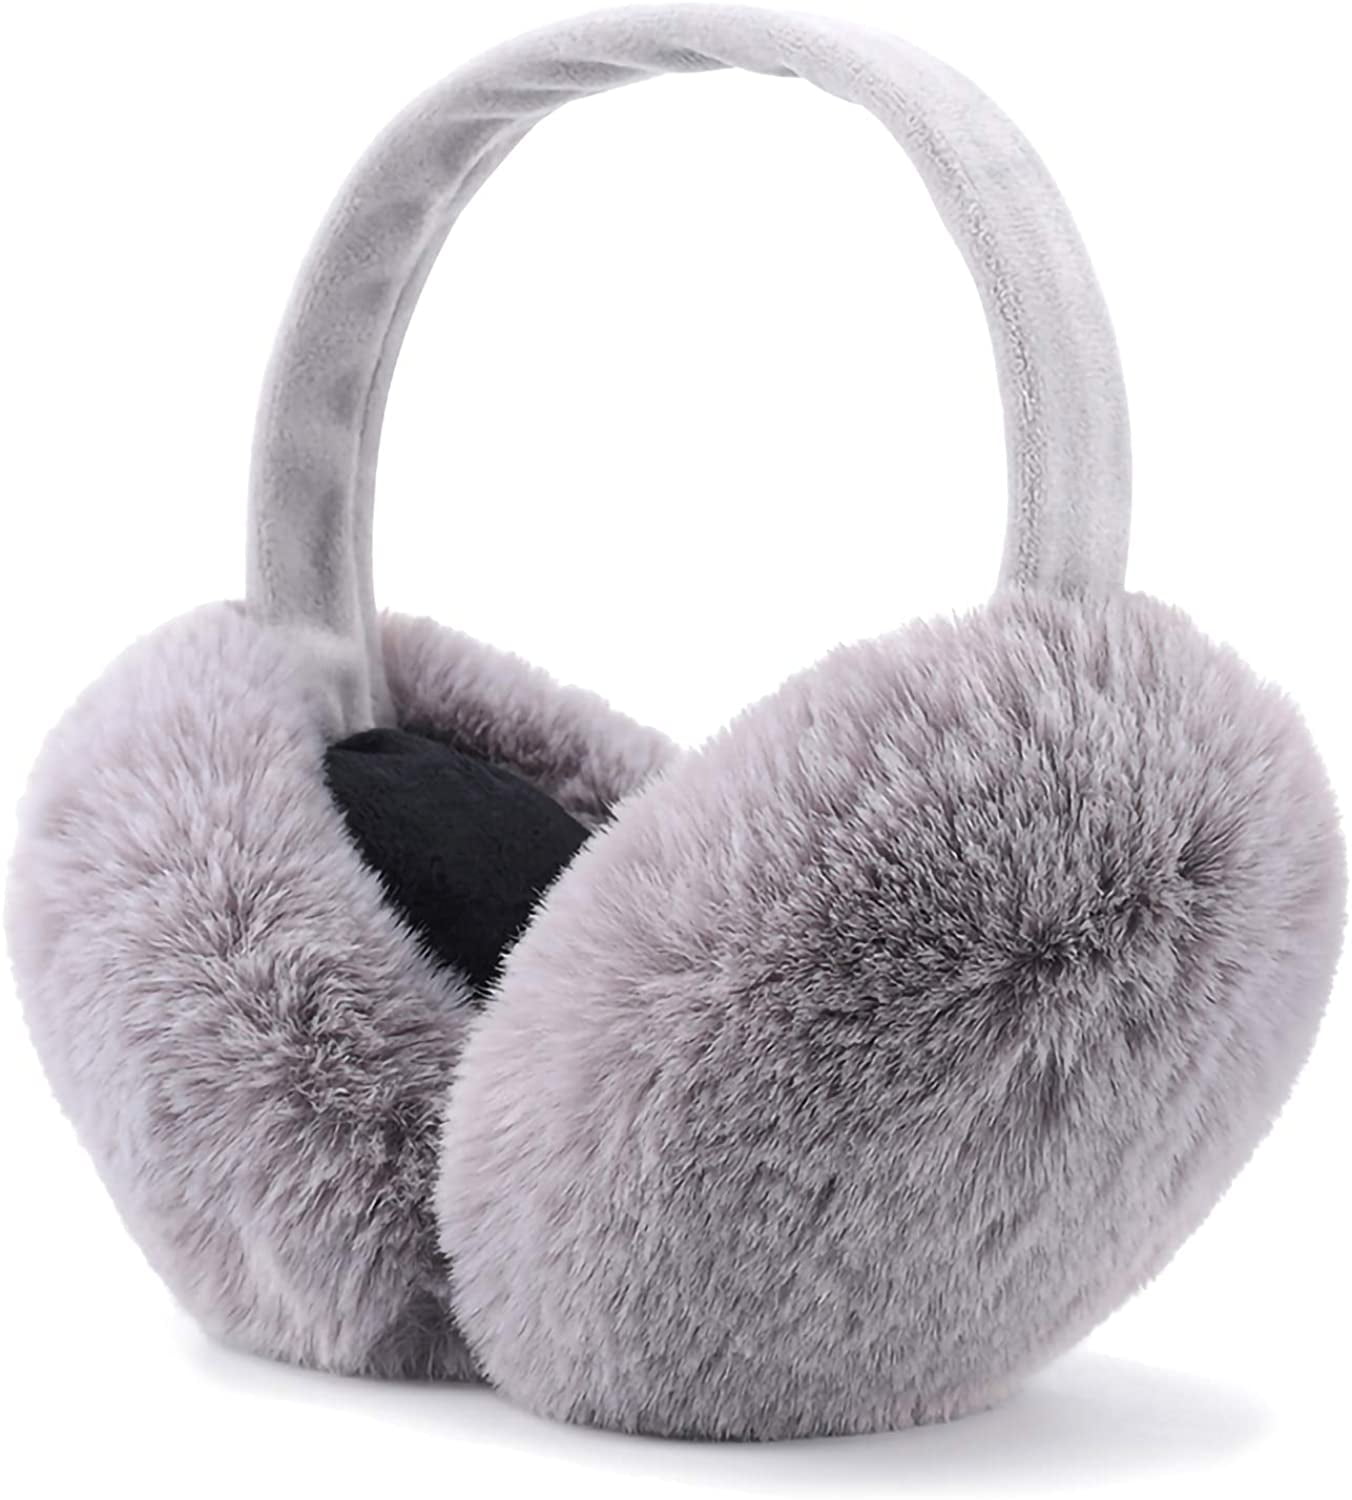 Folding Earmuffs Solid Color Ear Muffs Winter Warmer Earlap Christmas Headwear Accessories for Men Women 